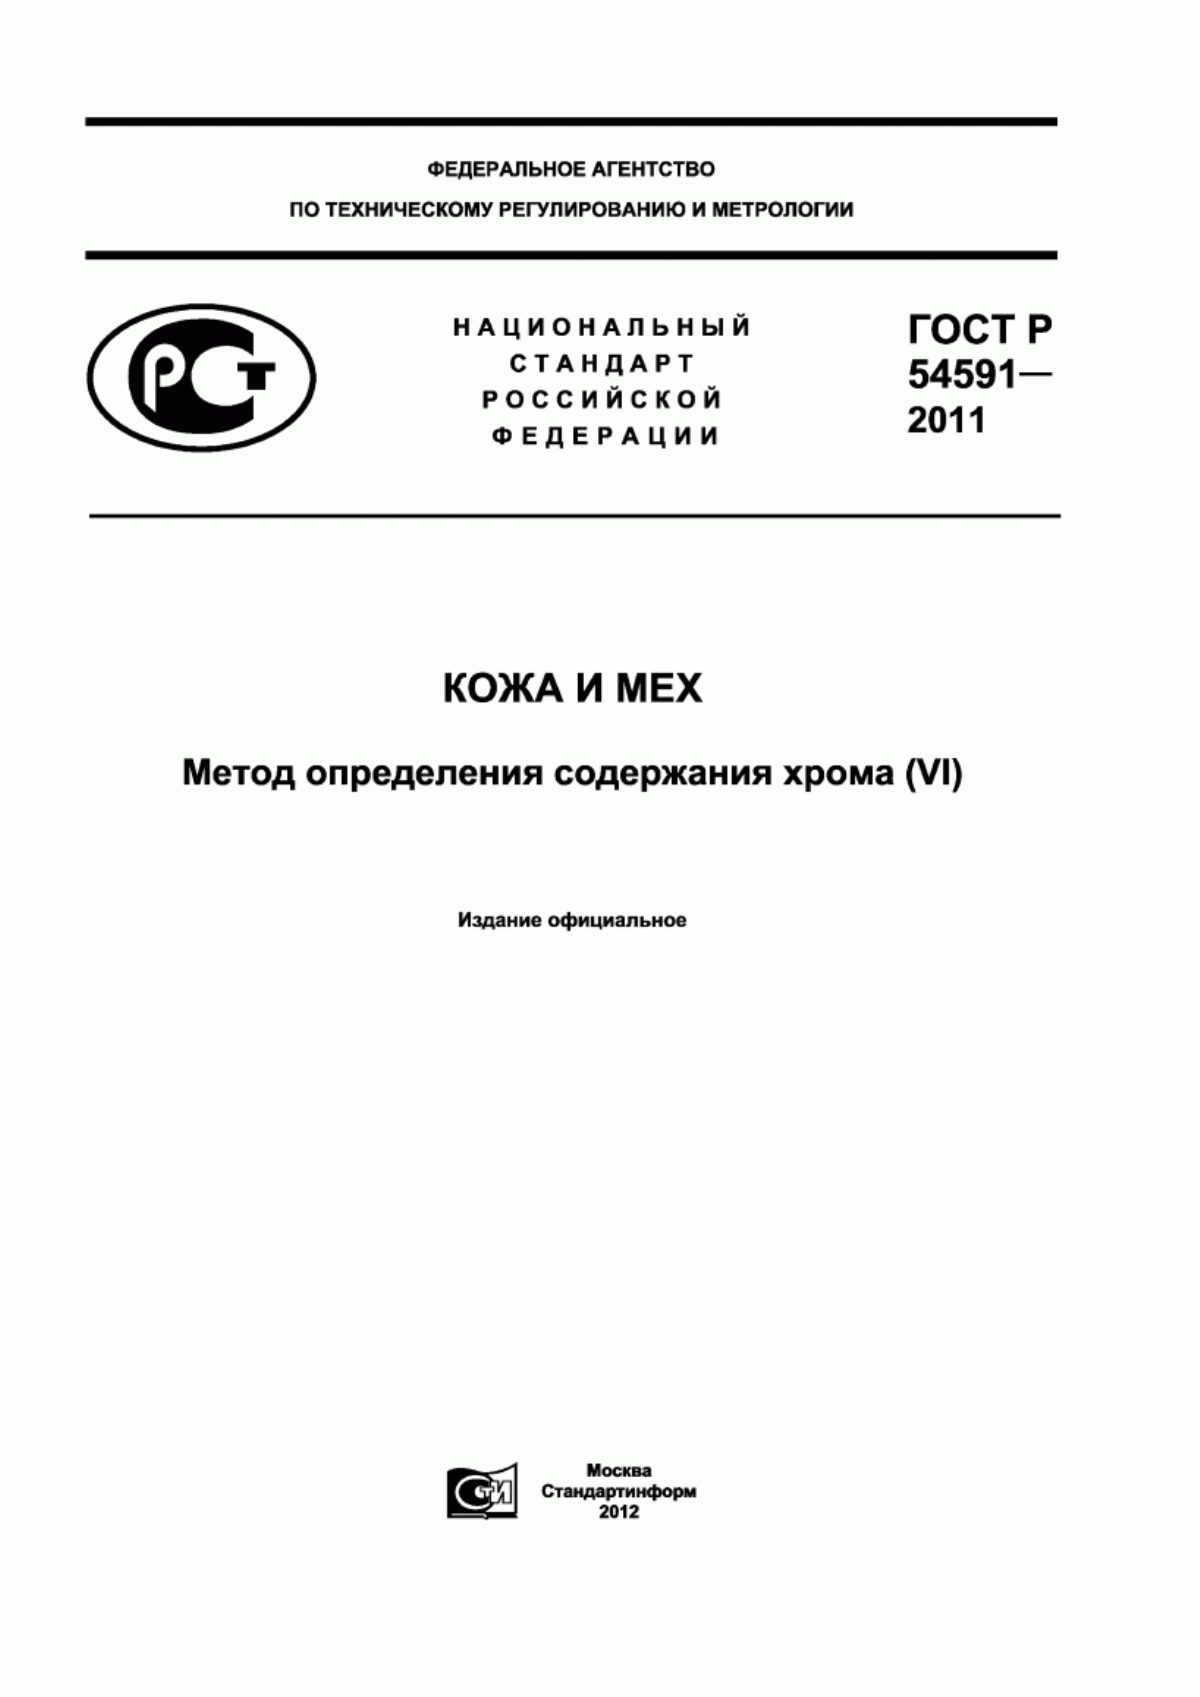 ГОСТ Р 54591-2011 Кожа и мех. Метод определения содержания хрома (VI)